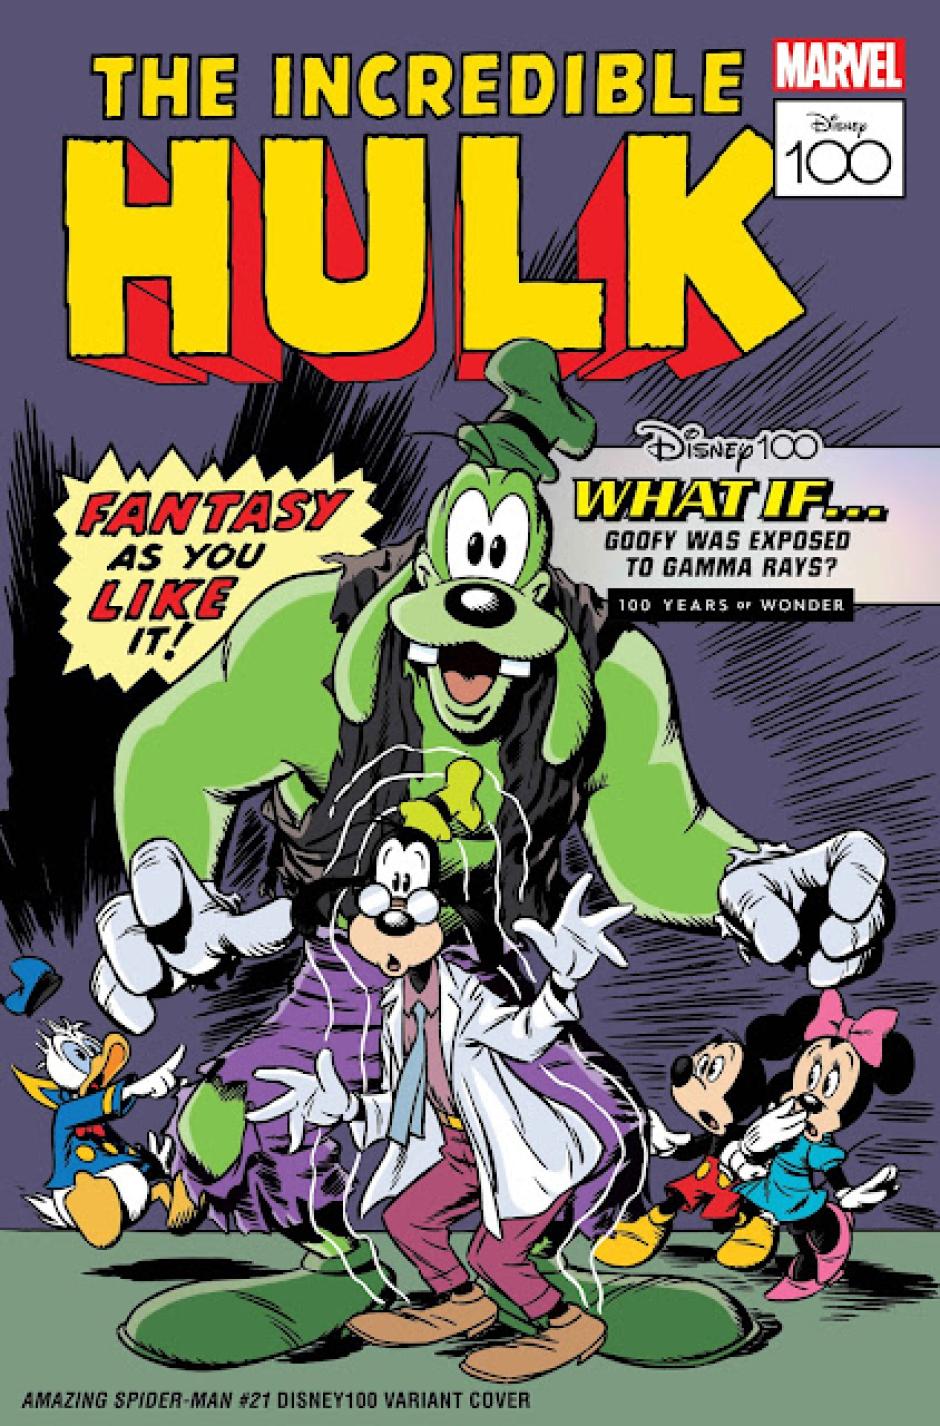 Goofy caracterizado como Hulk en la portada homenaje de Marvel de marzo